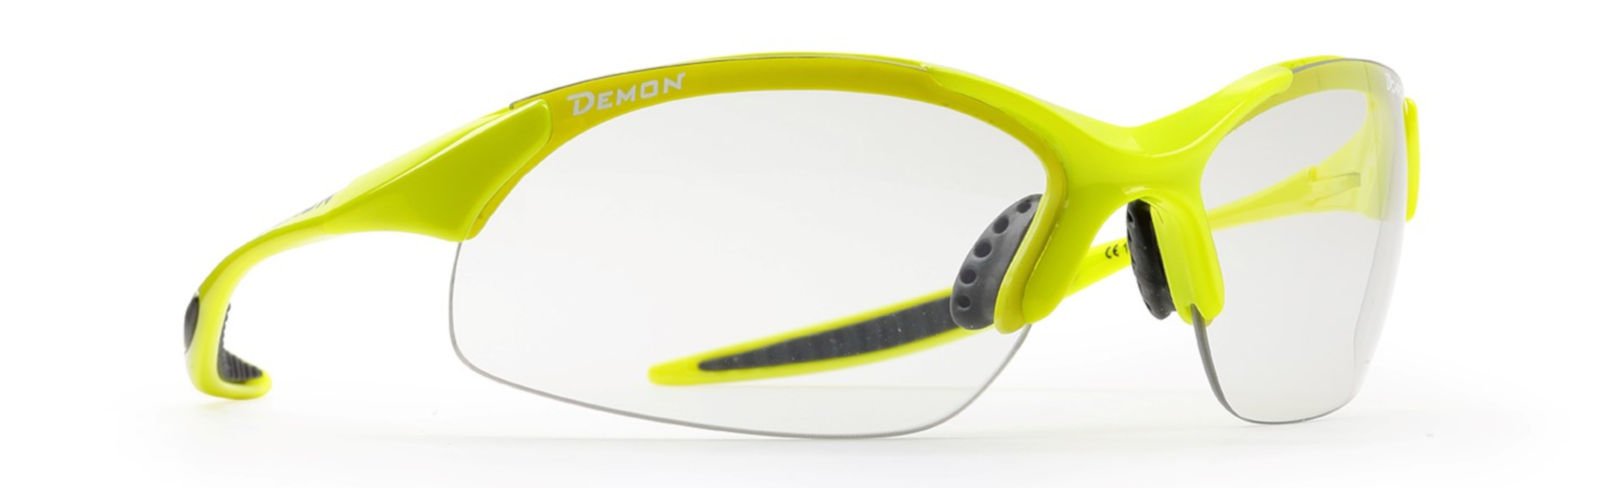 occhiale sportivo unisex per ogni sport lenti fotocromatiche giallo fluo modello 832